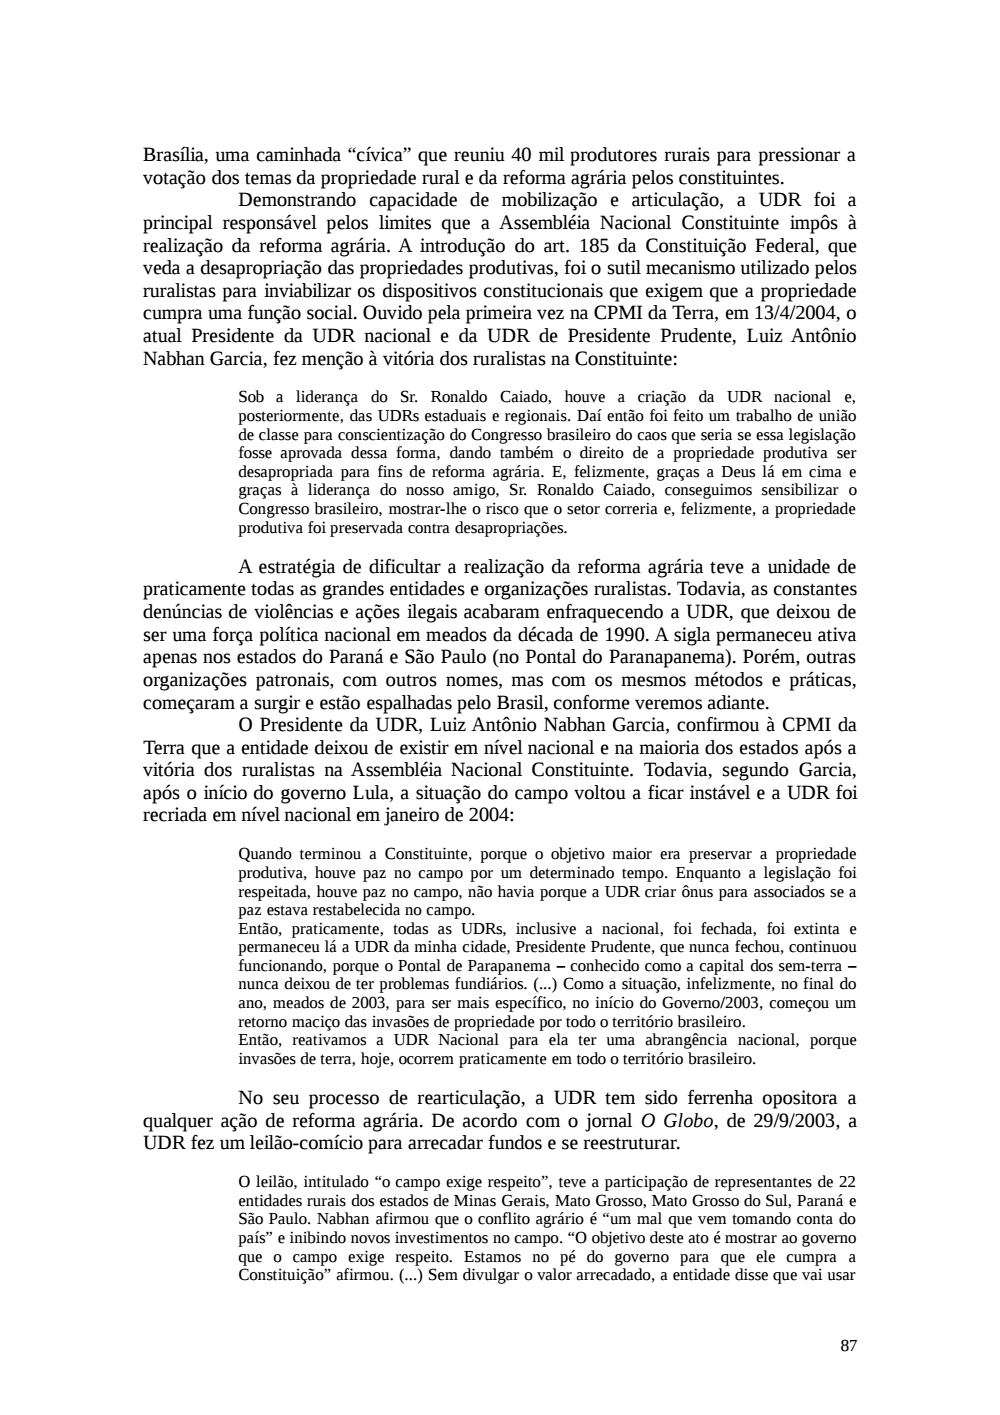 Page 87 from Relatório final da comissão